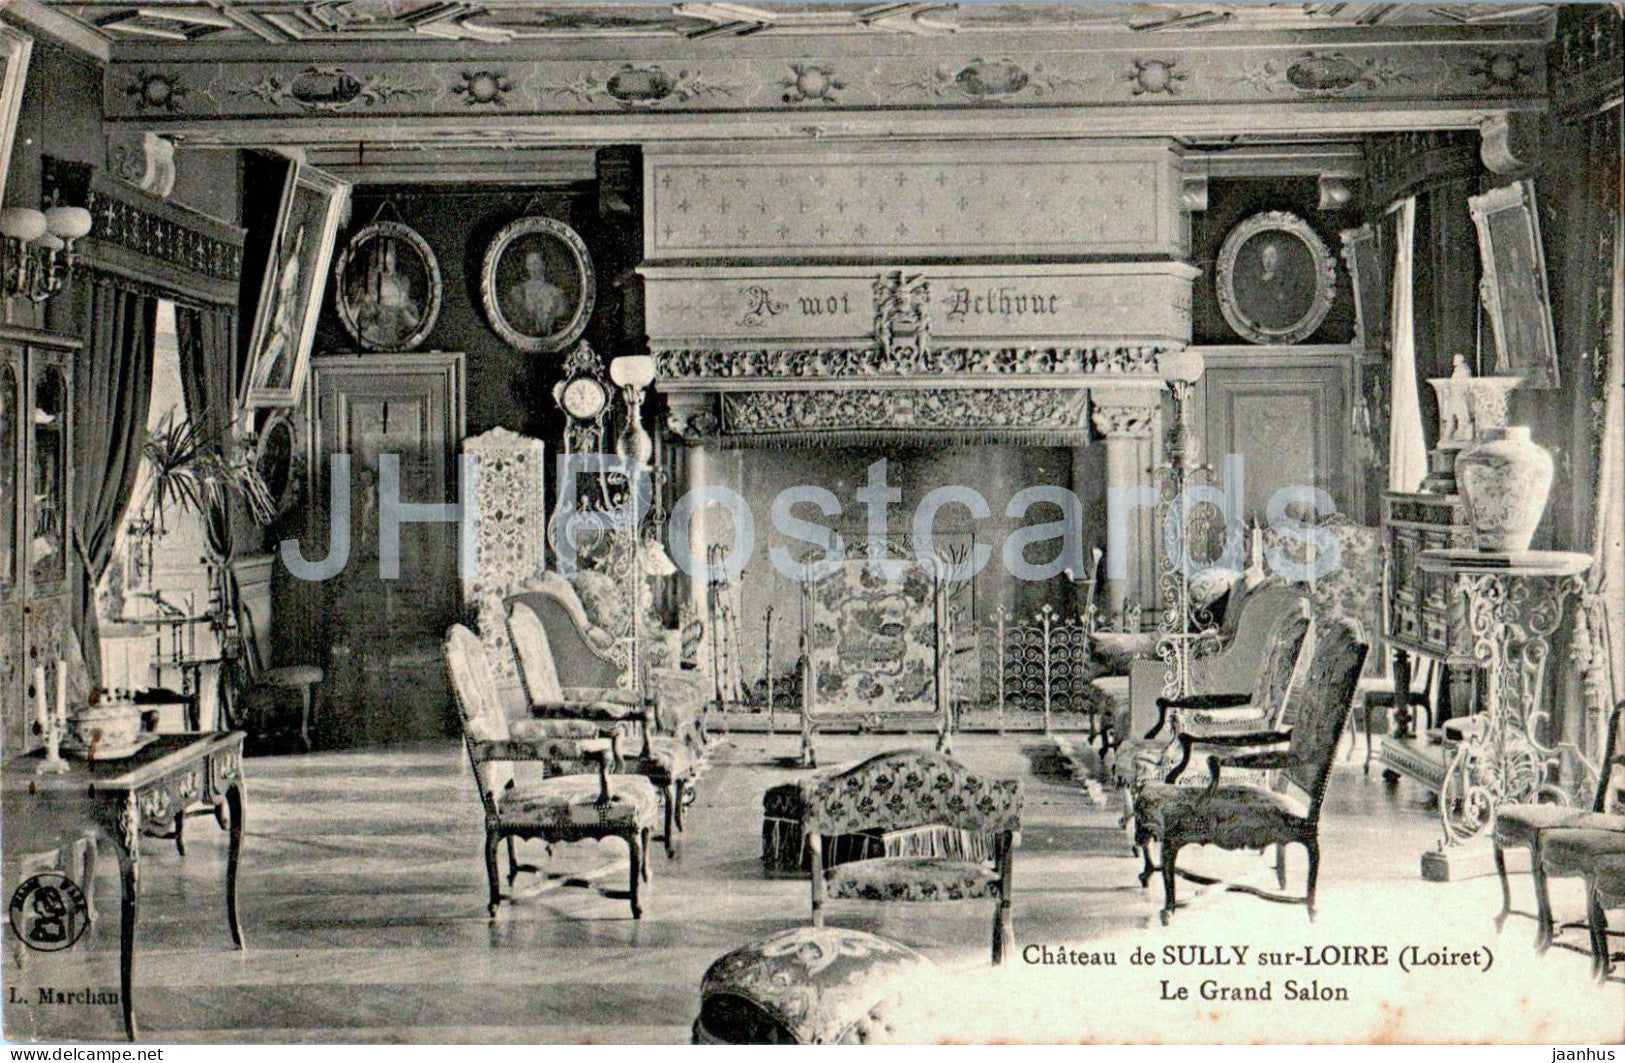 Chateau de Sully sur Loire - Le Grand Salon - castle - old postcard - 1914 - France - used - JH Postcards